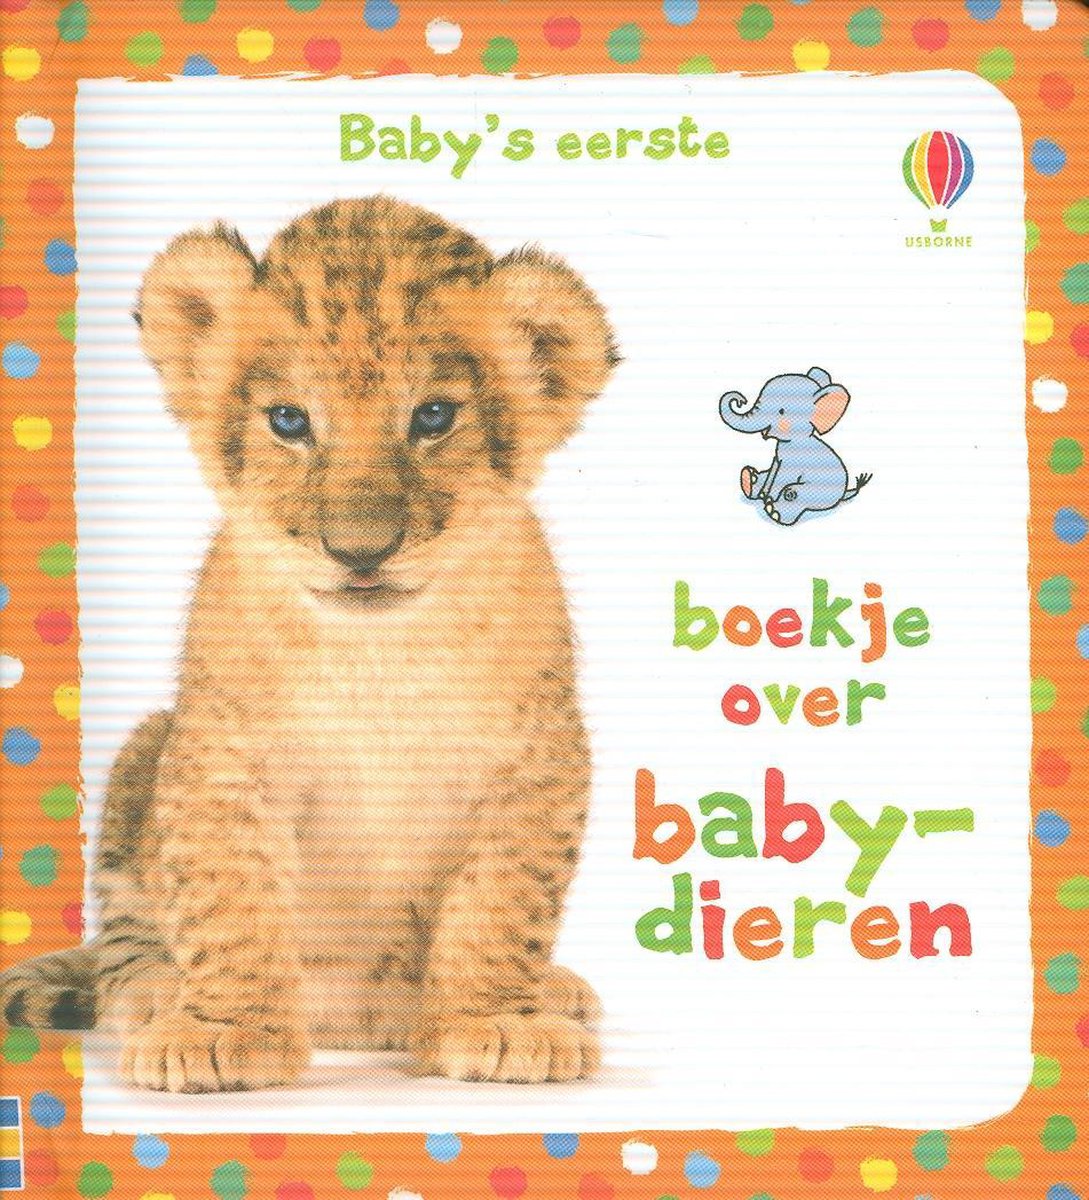 *Baby's eerste boekje over baby dieren